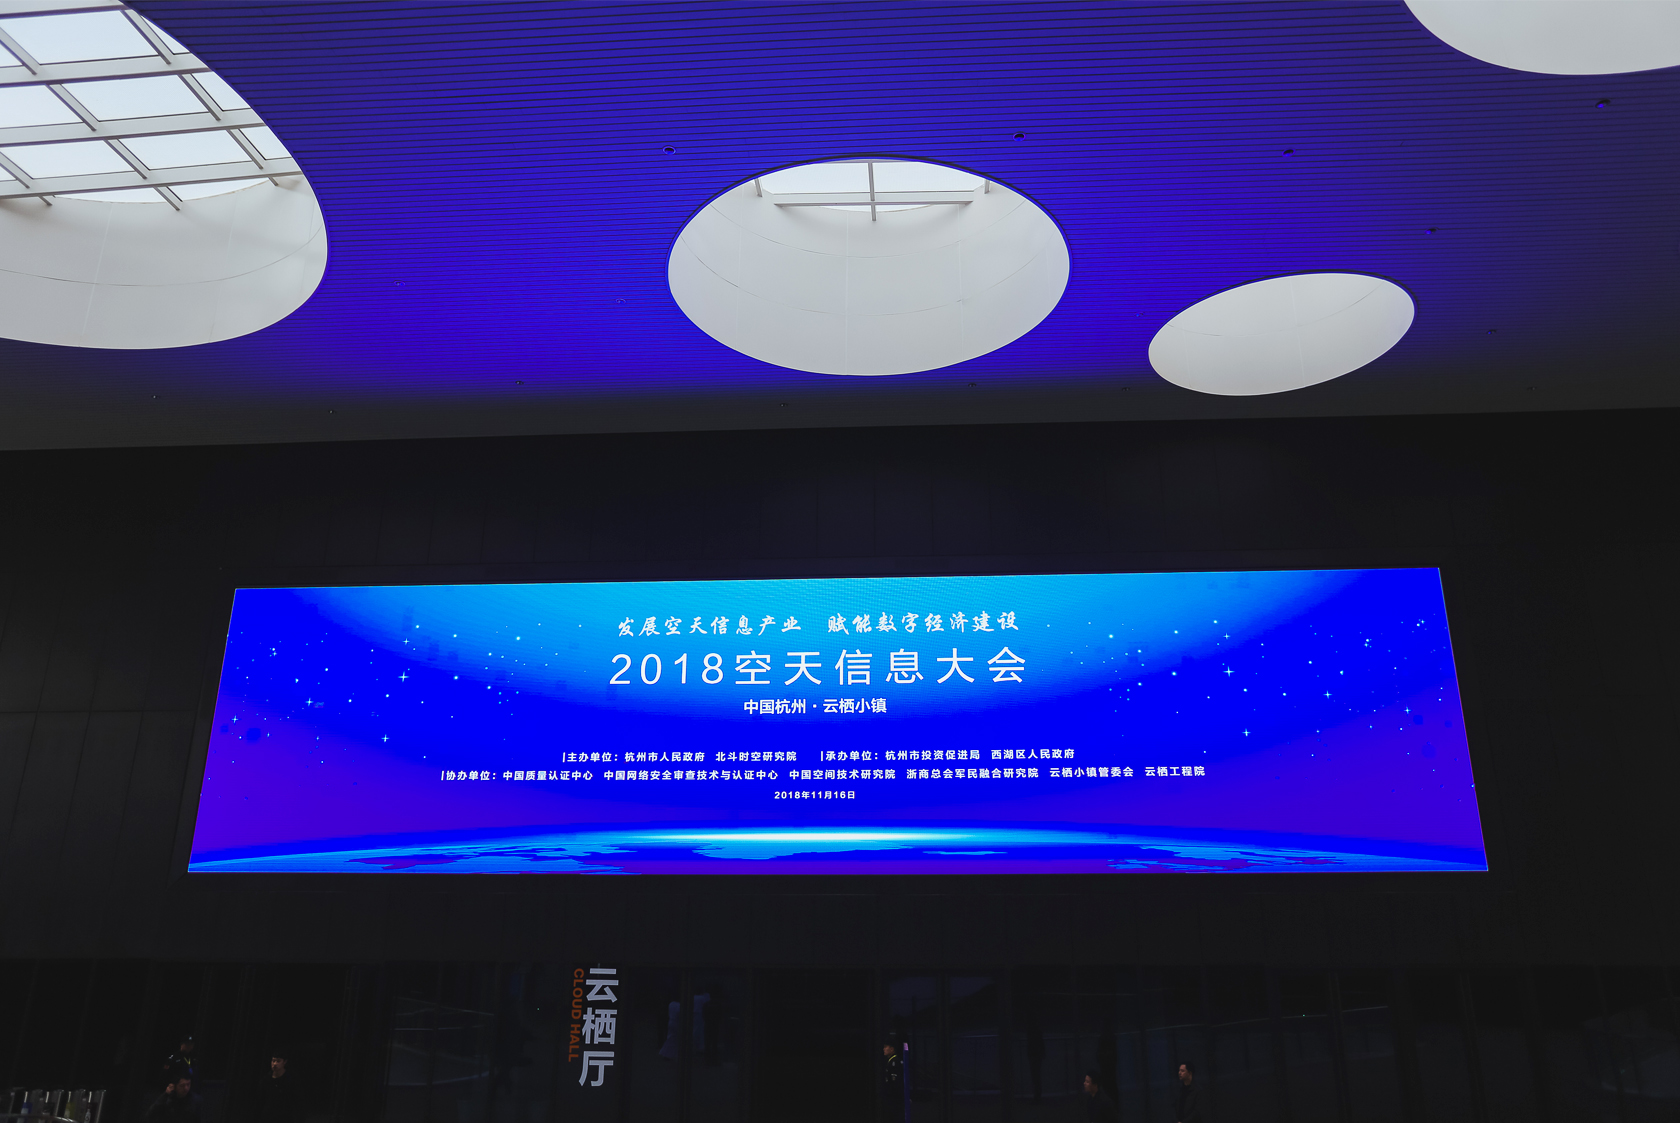 2018空天信息大会 杭州市政府主办行业论坛会议-1